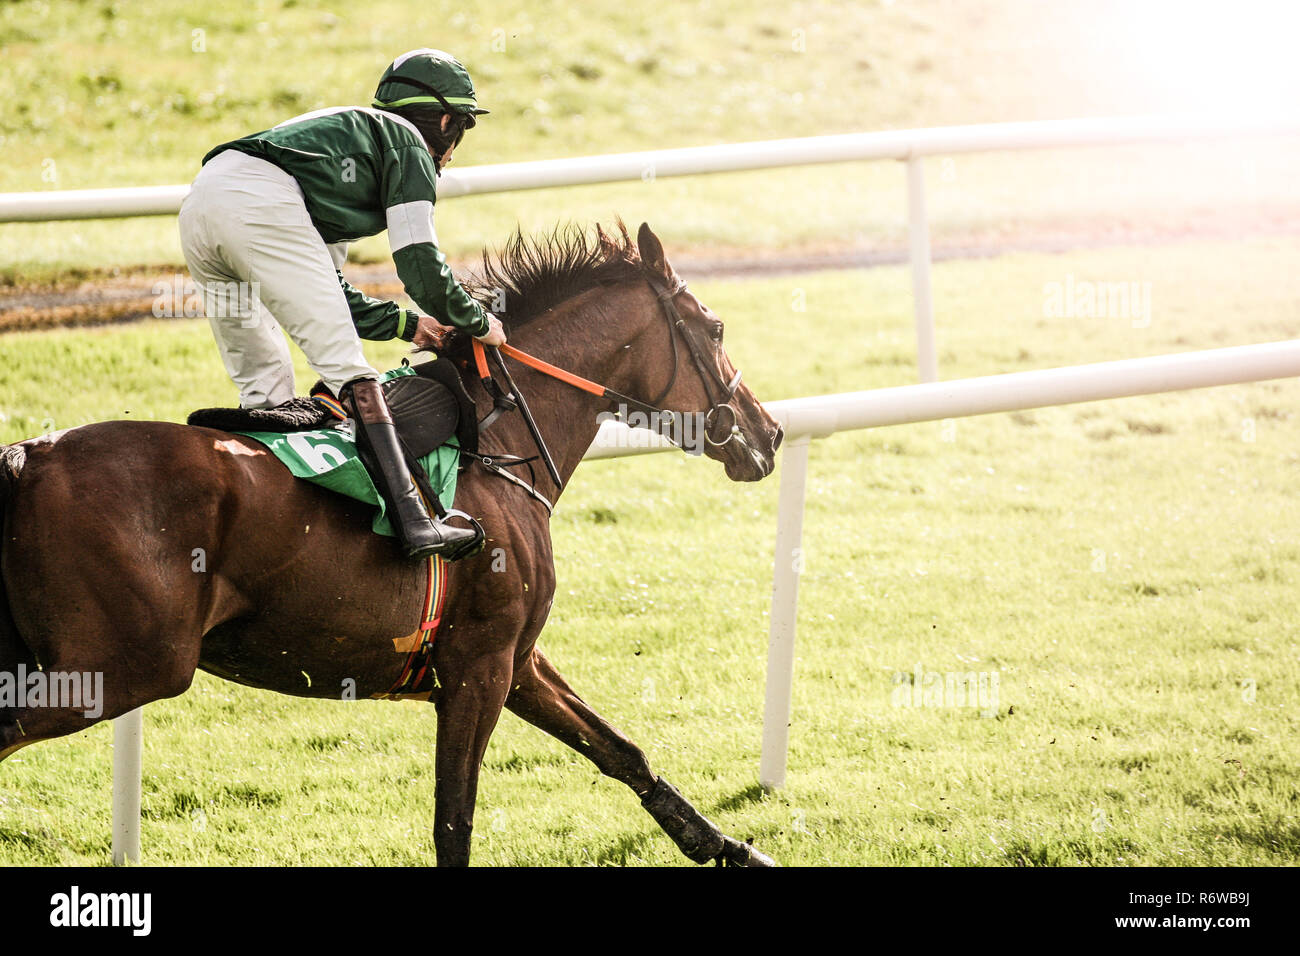 Les chevaux et les jockeys dans les courses de cross, Sun sun transformés effet flare Banque D'Images